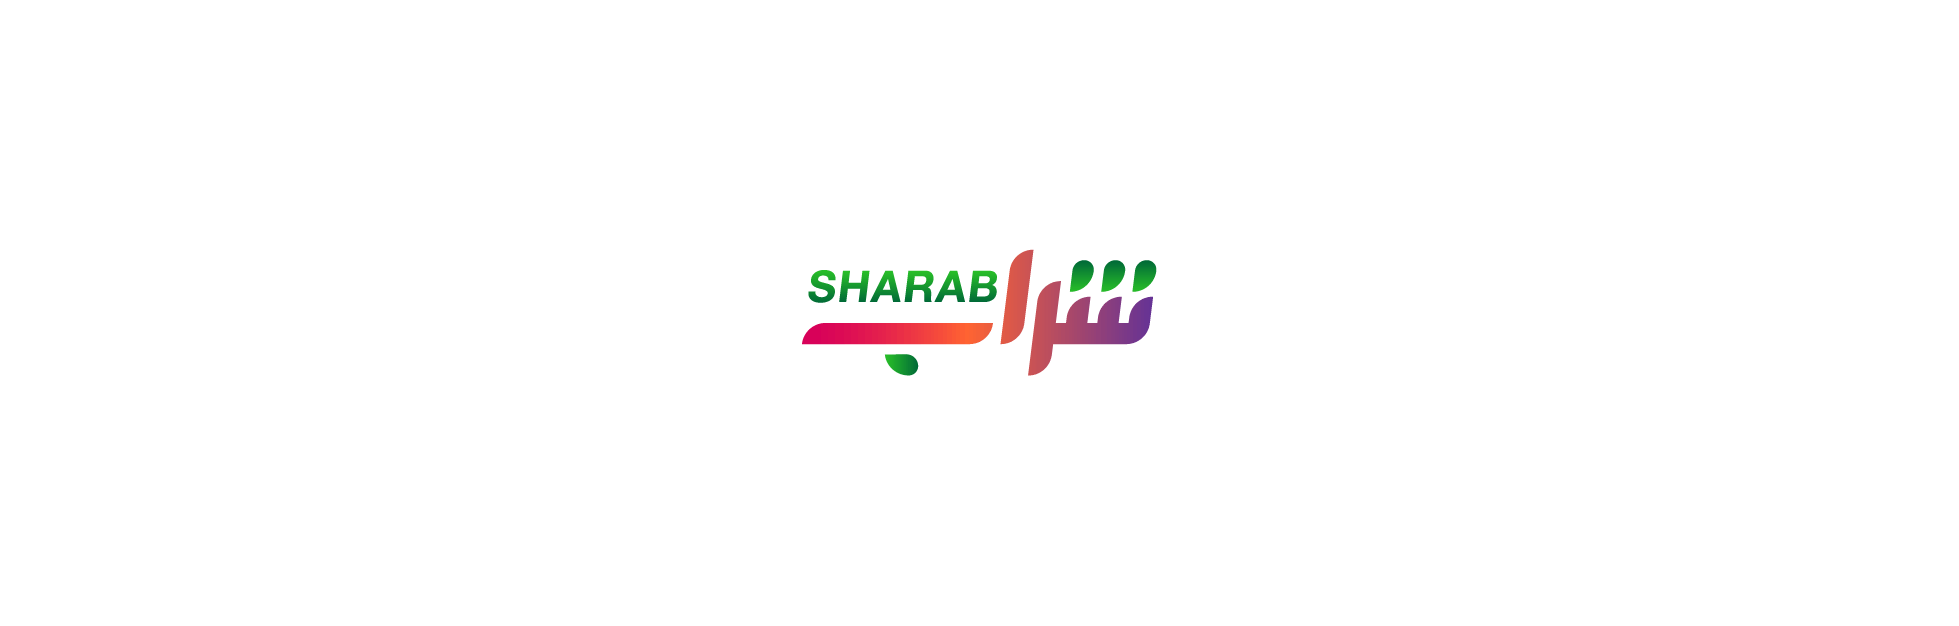 sharab_brandmark